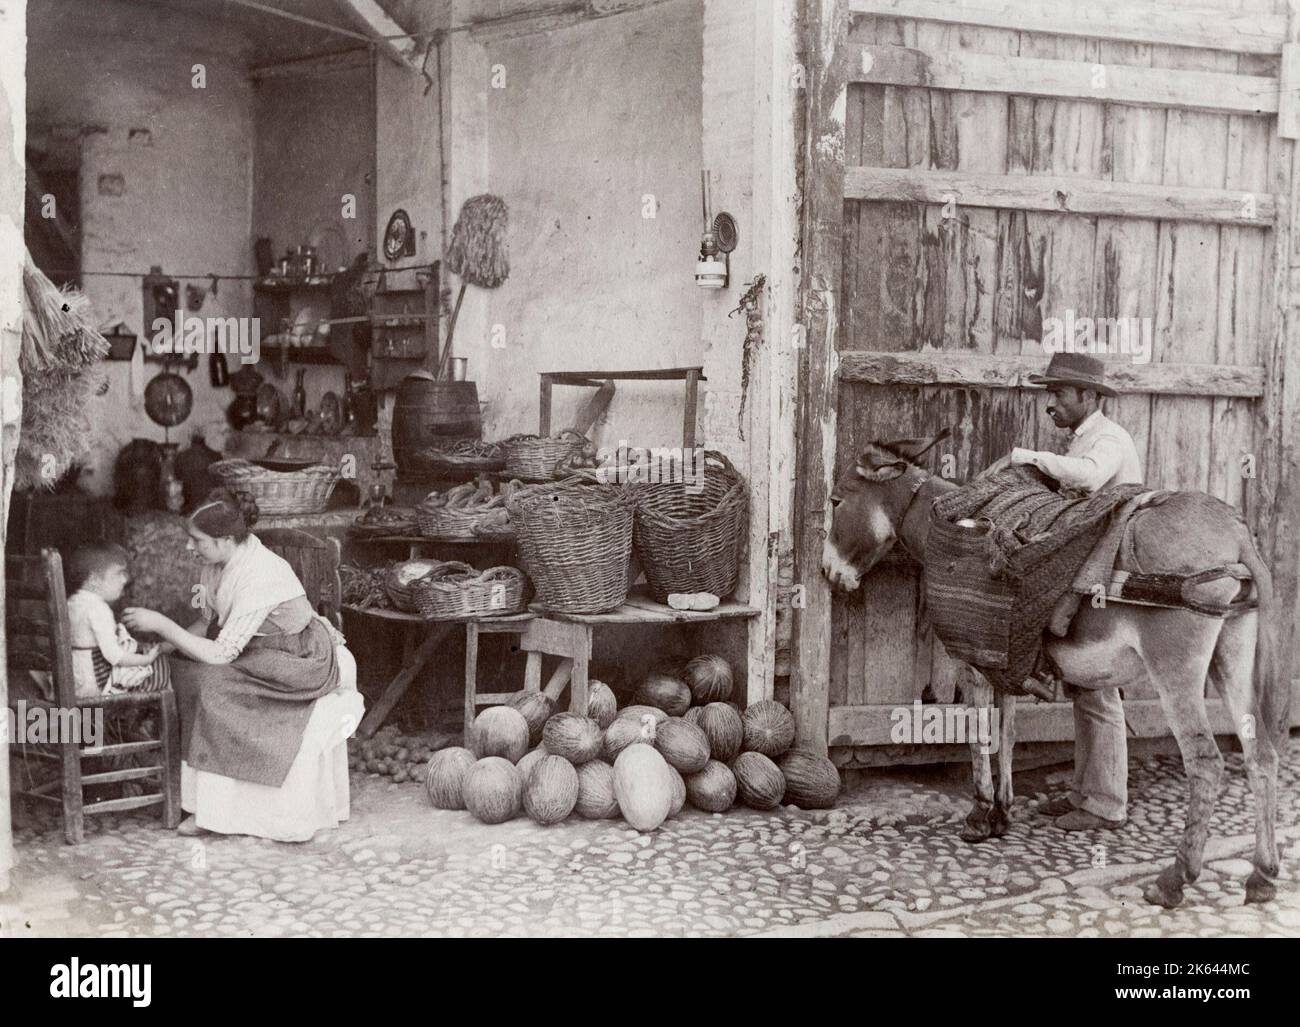 Fotografia del 19 ° secolo d'epoca - scena rurale in Spagna, bancarella di frutta, uomo e asino con panieri caricati Foto Stock